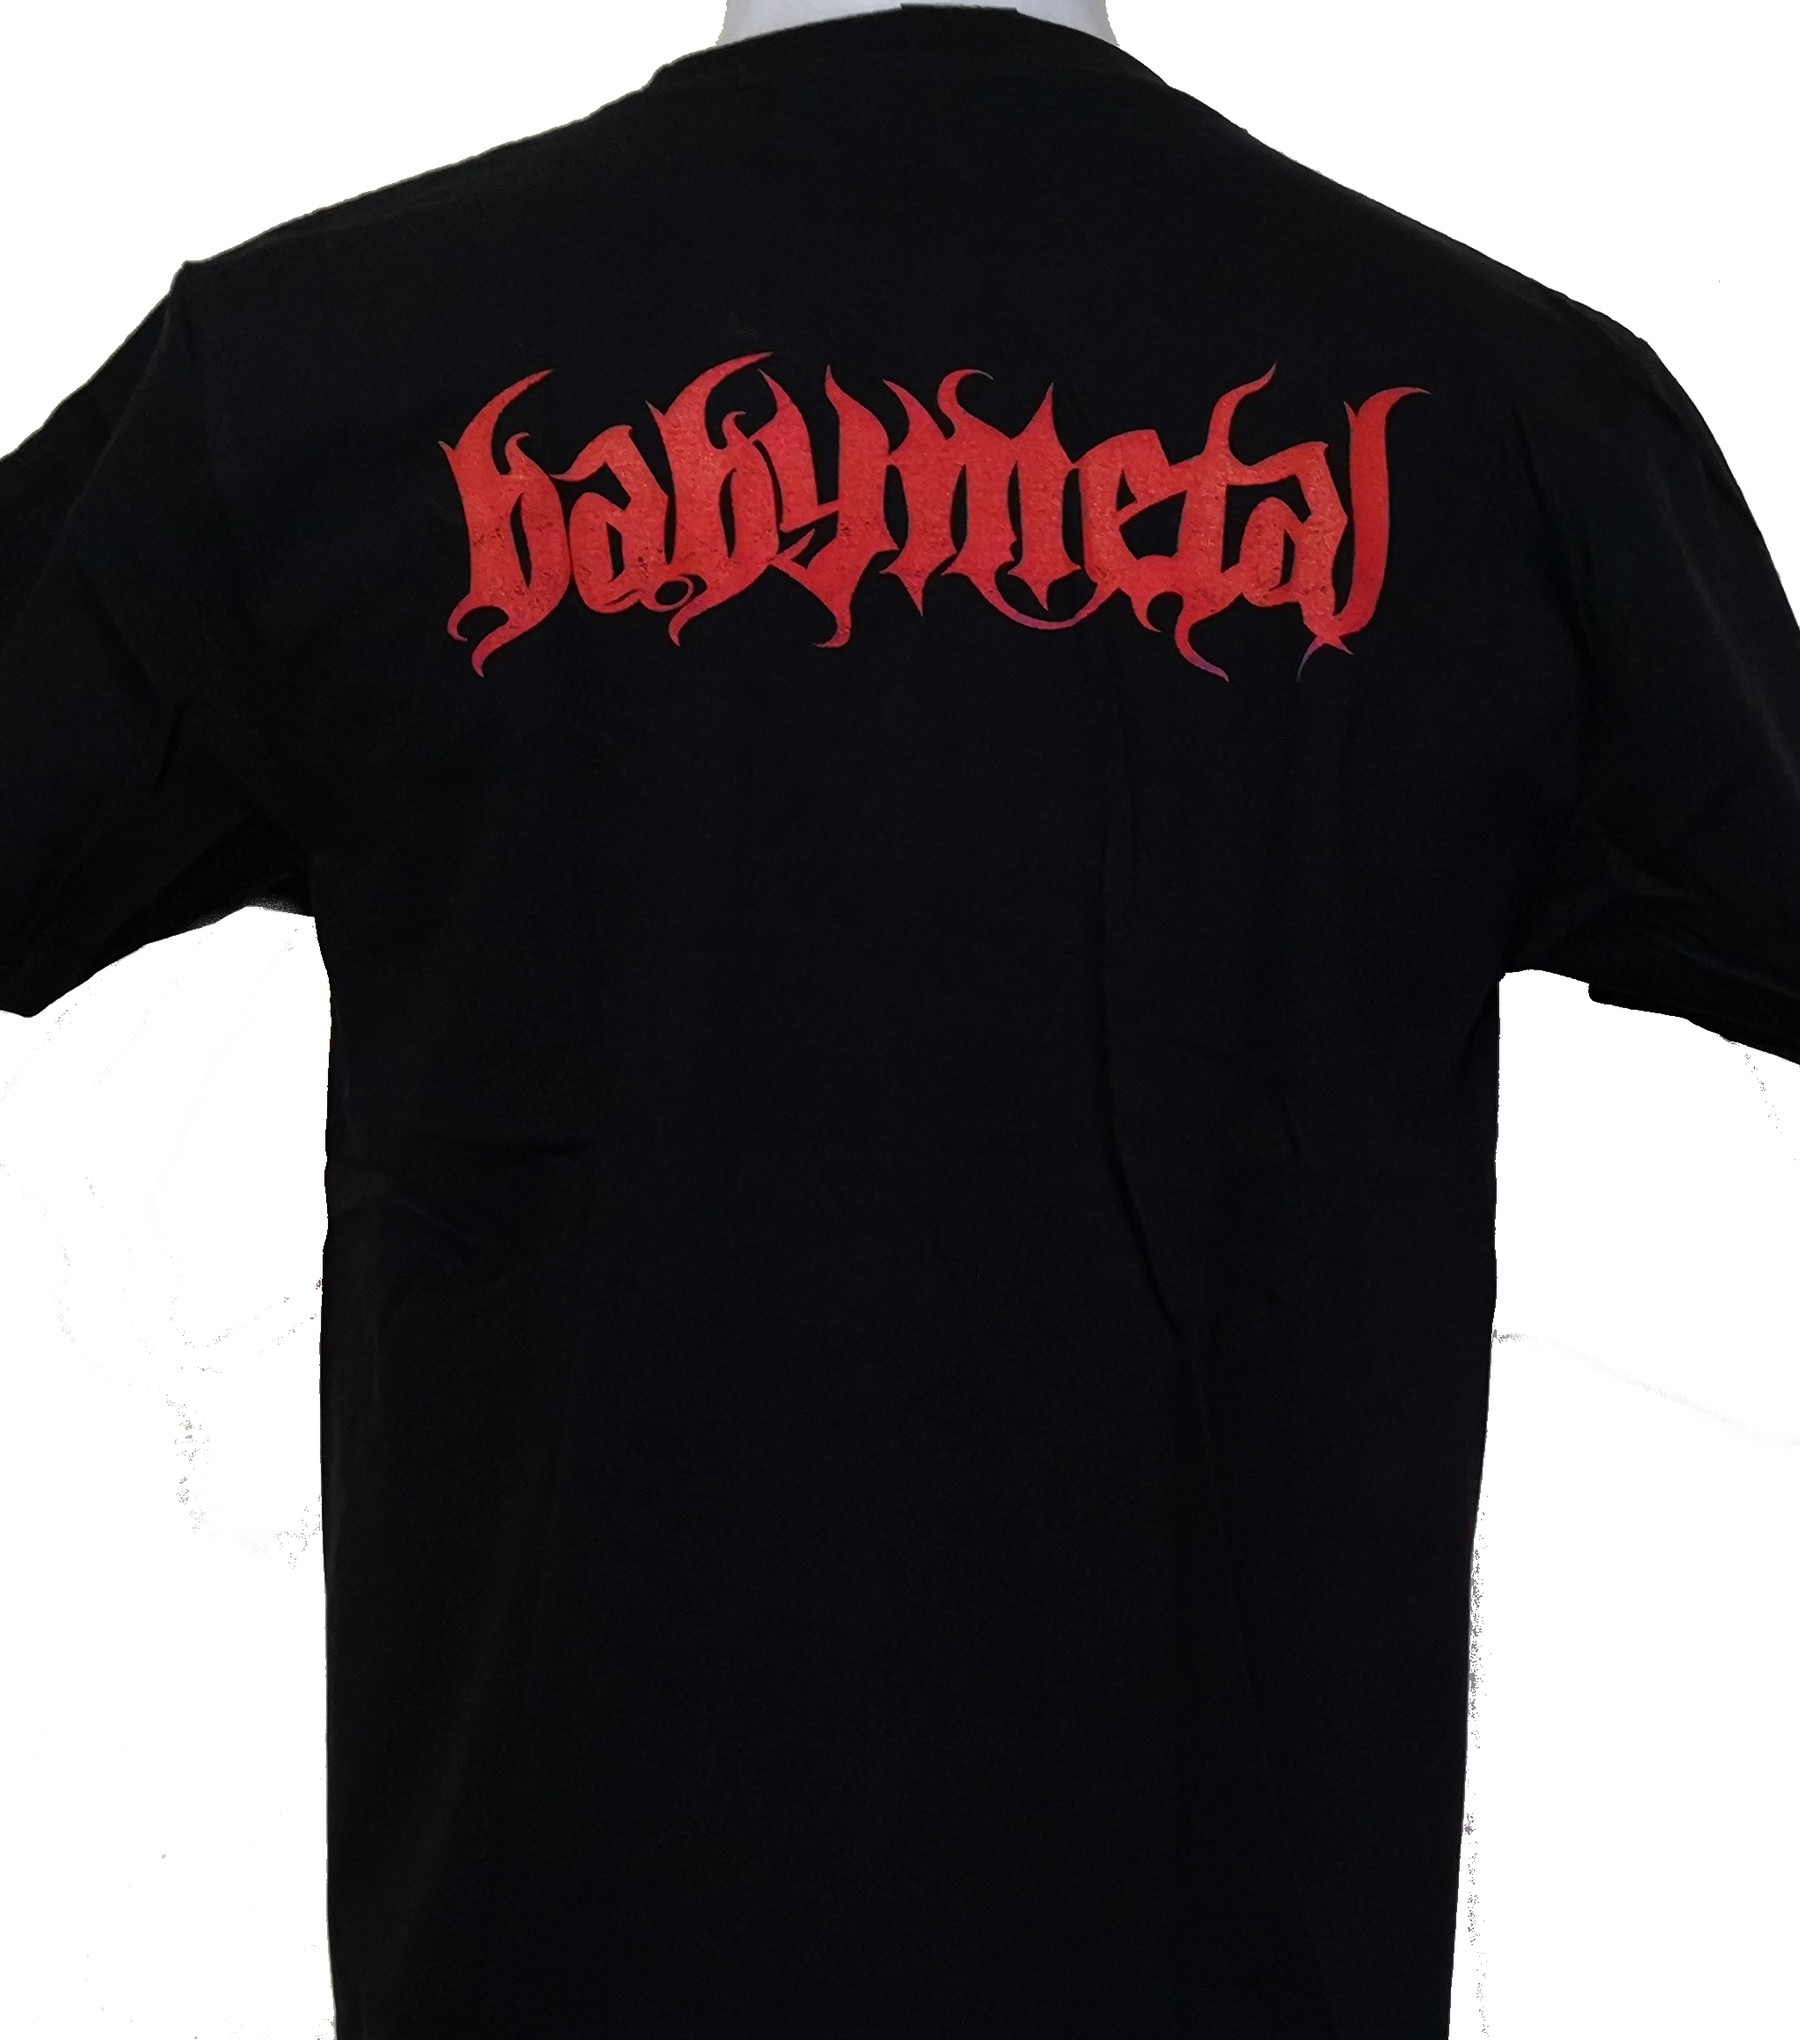 BabyMetal t-shirt size L